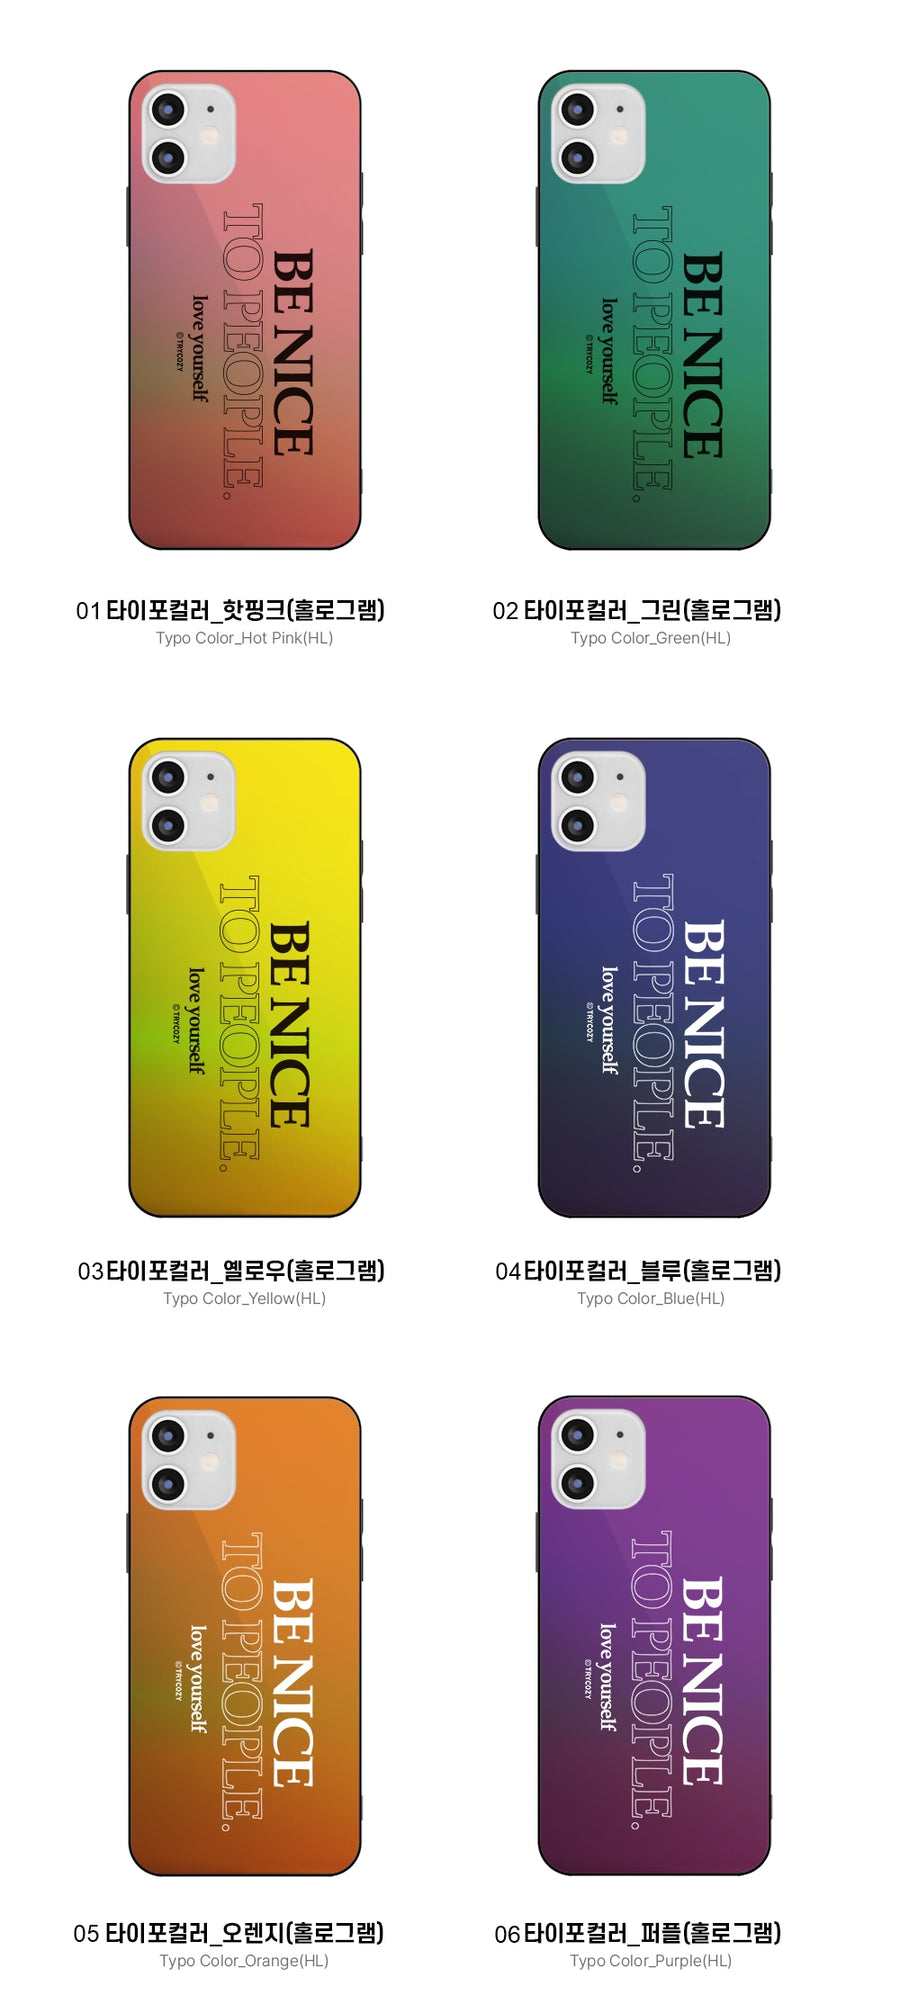 韓國直送 | M51 BE NICE - 炫彩鏡面手機殼 iPhone / Samsung Galaxy